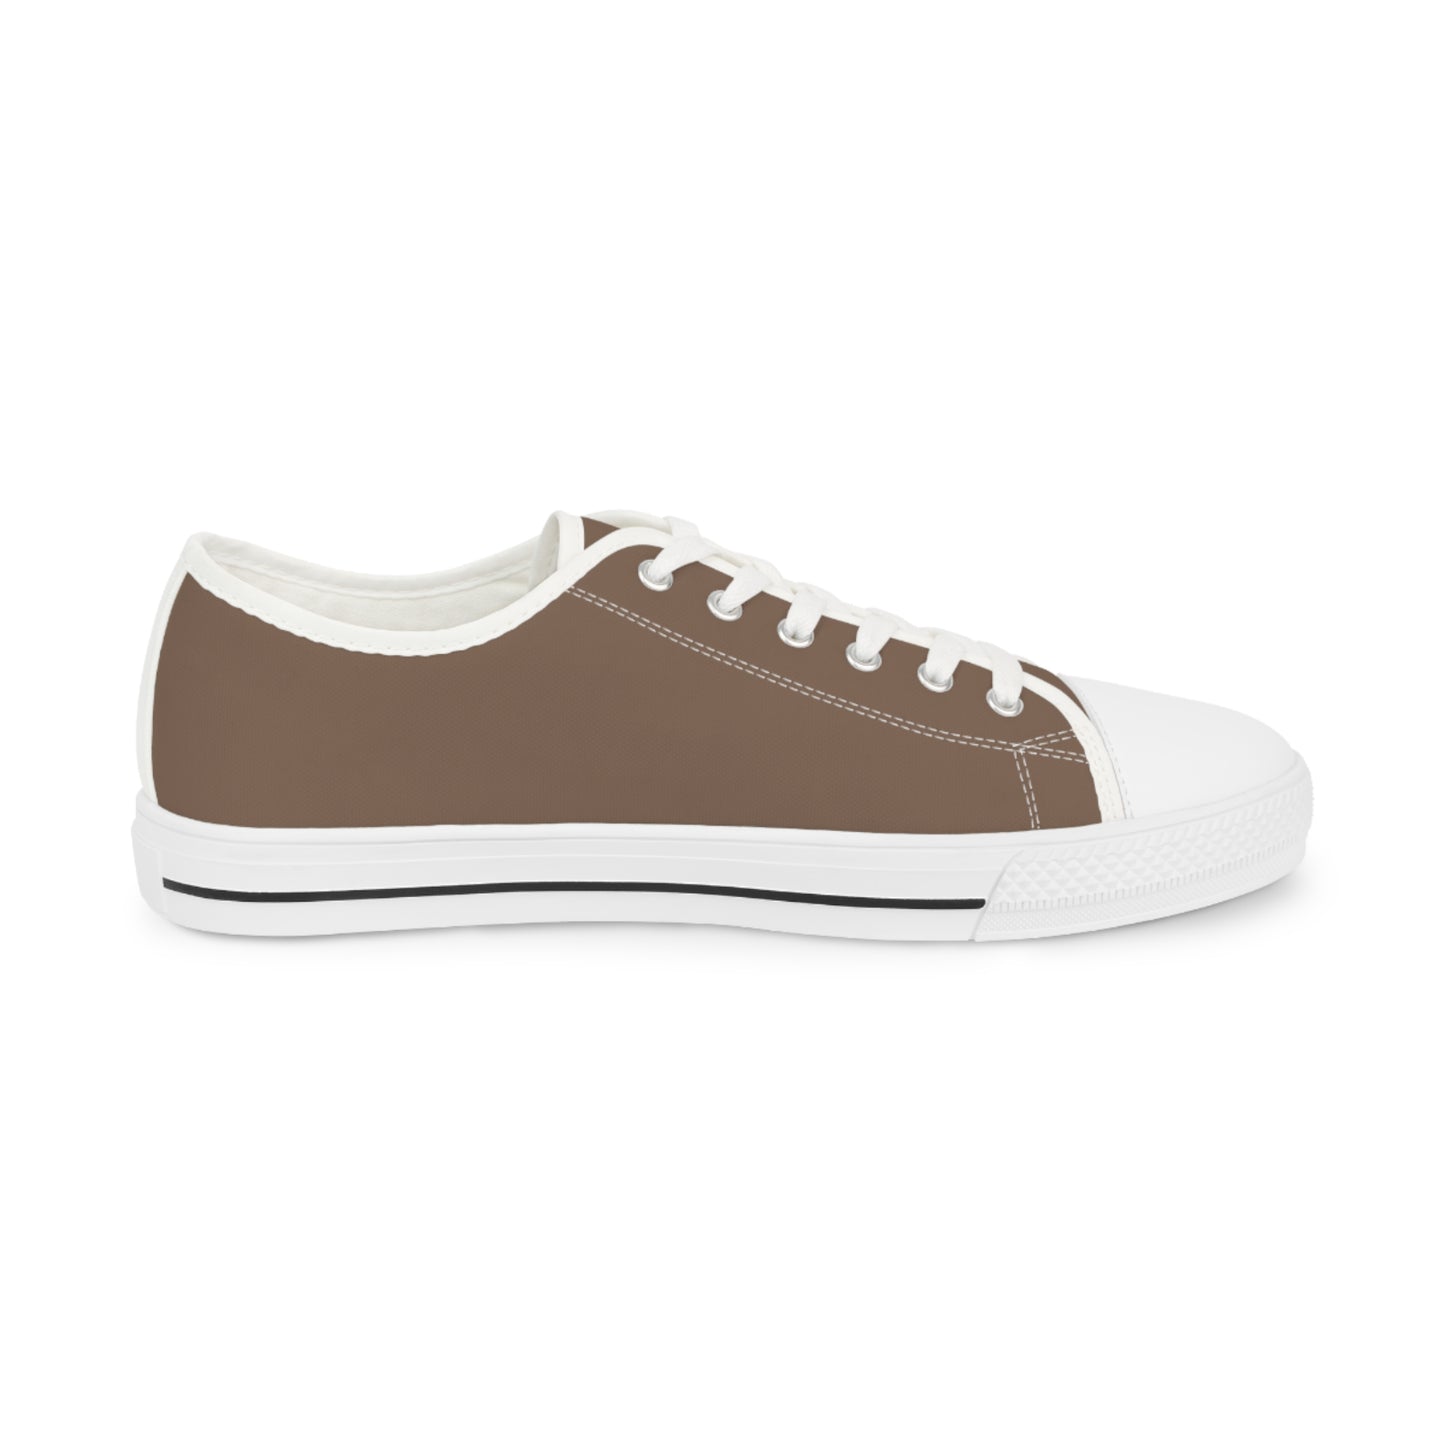 Men's Canvas Low Top Solid Color Sneakers - Latte Tan US 14 Black sole